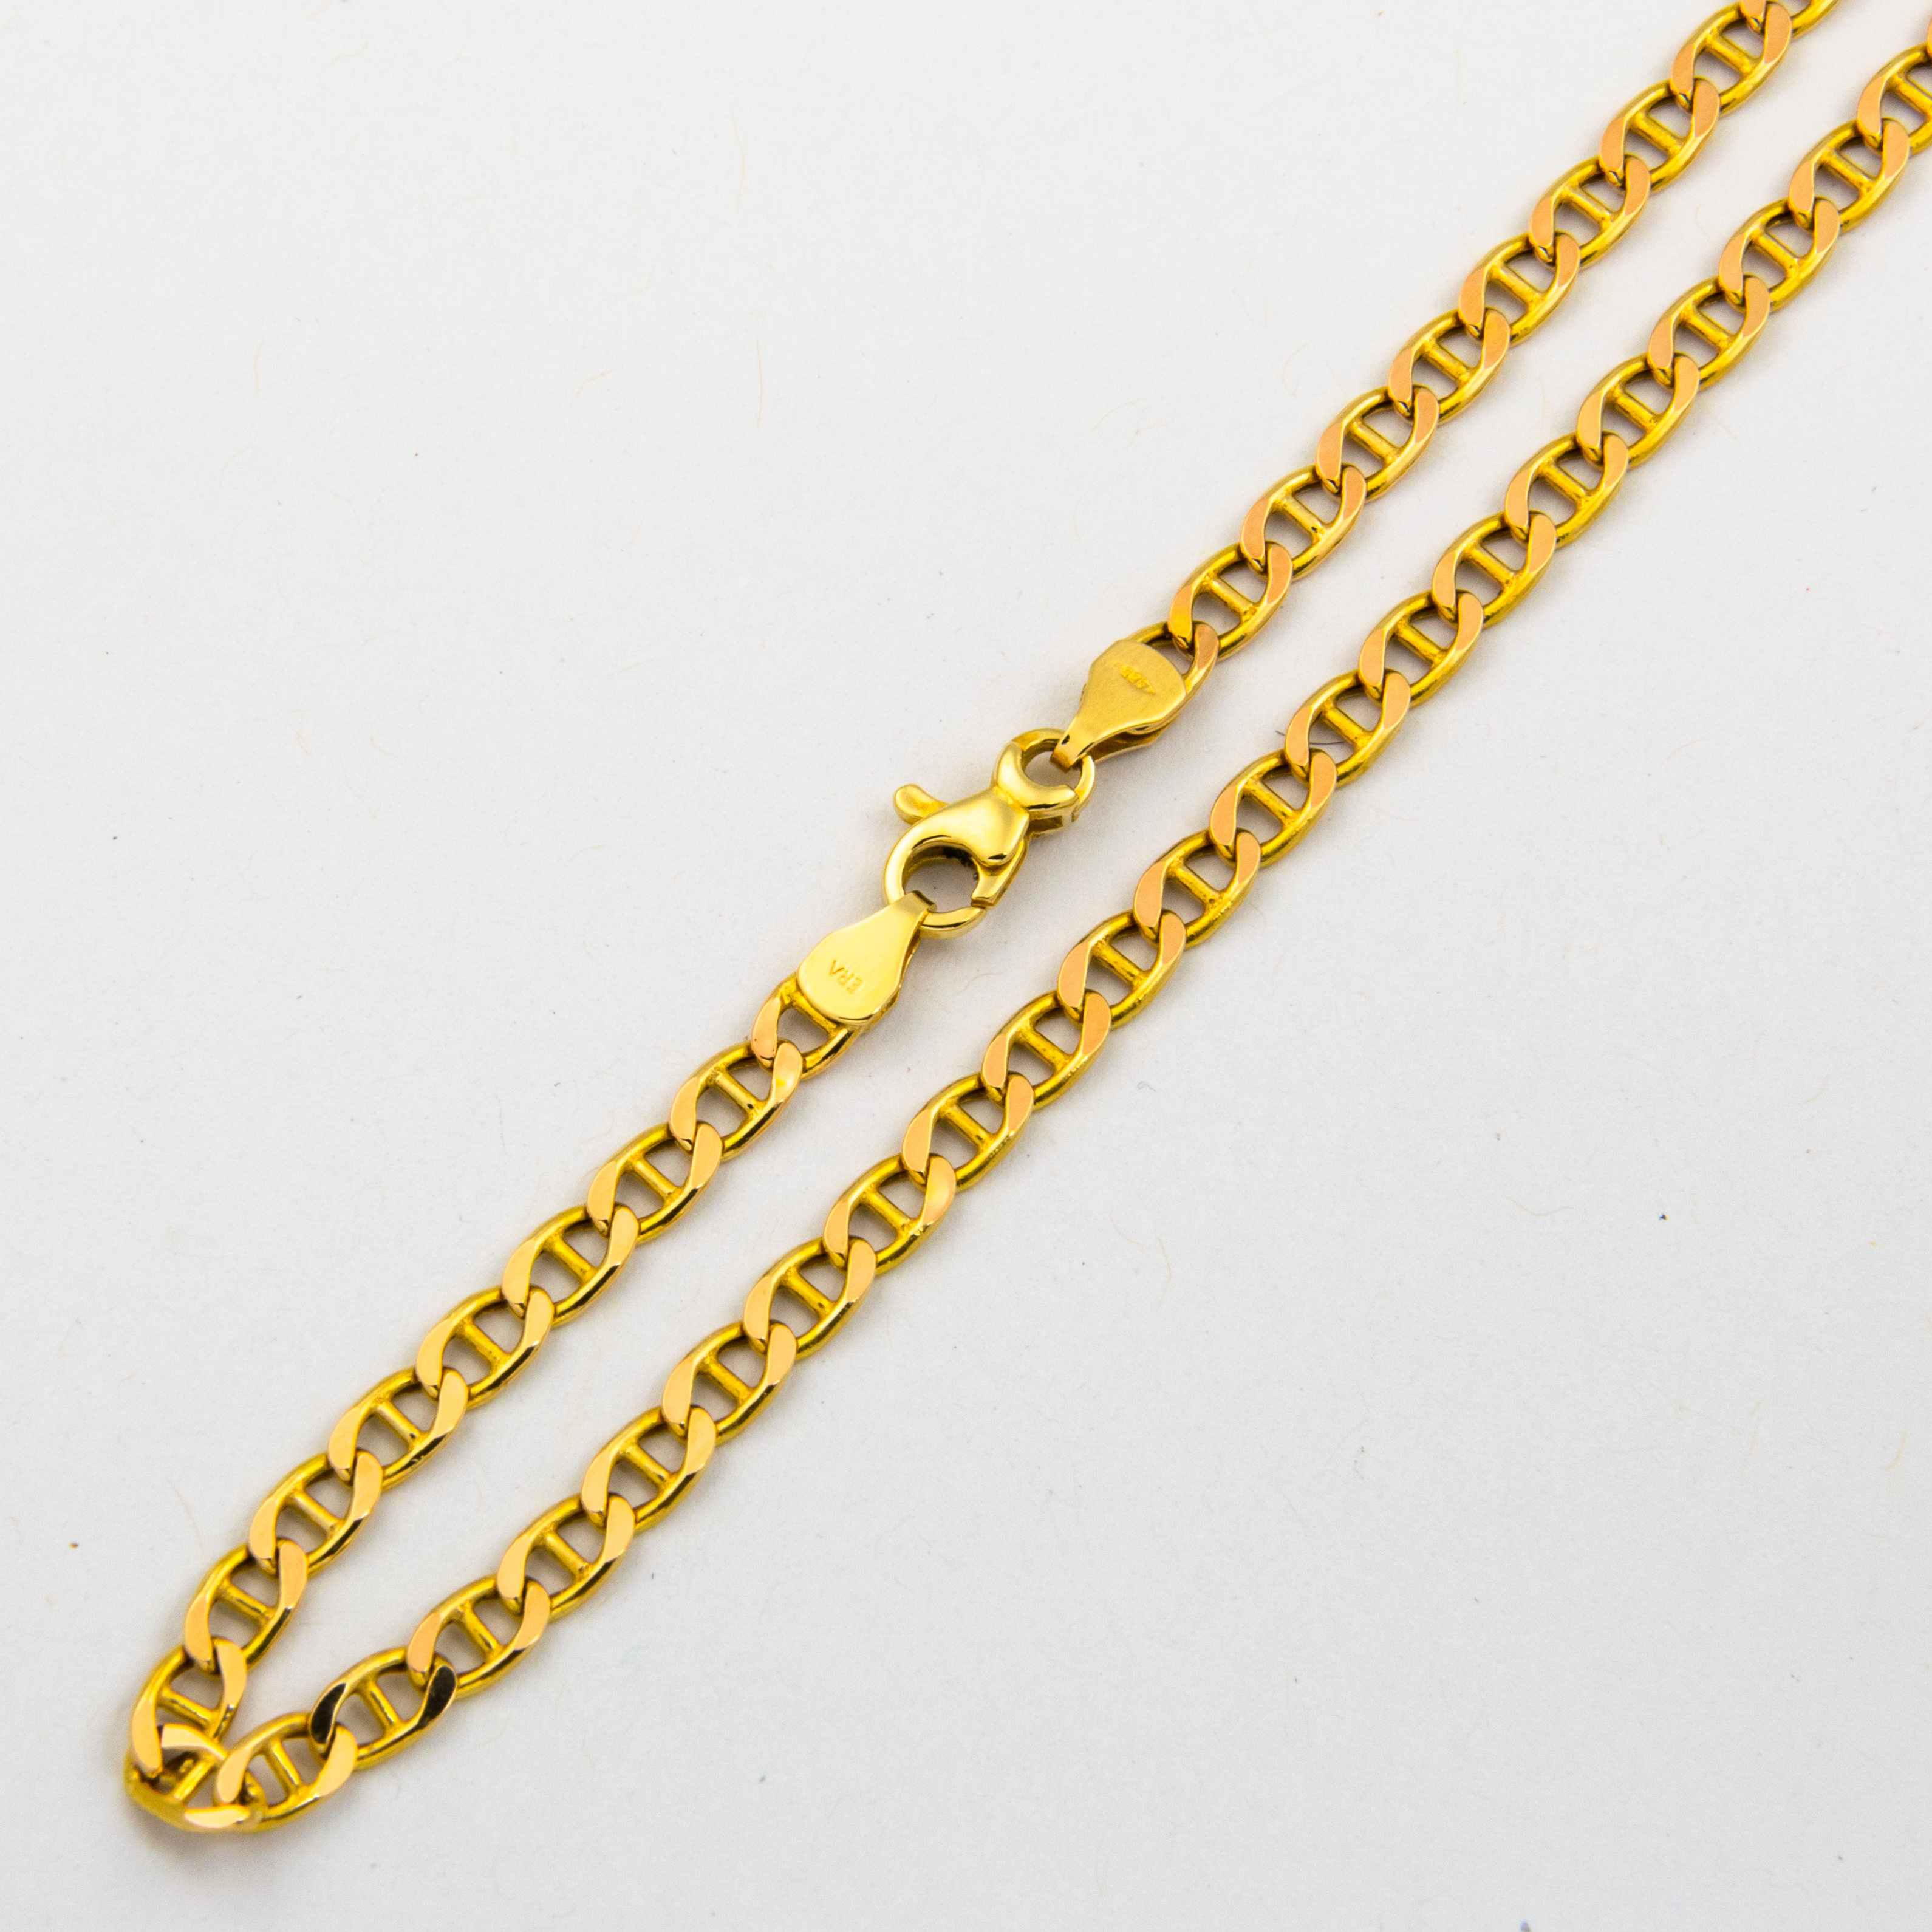 Stegpanzerkette aus 585 Gelbgold, 60,5cm, nachhaltiger second hand Schmuck perfekt aufgearbeitet